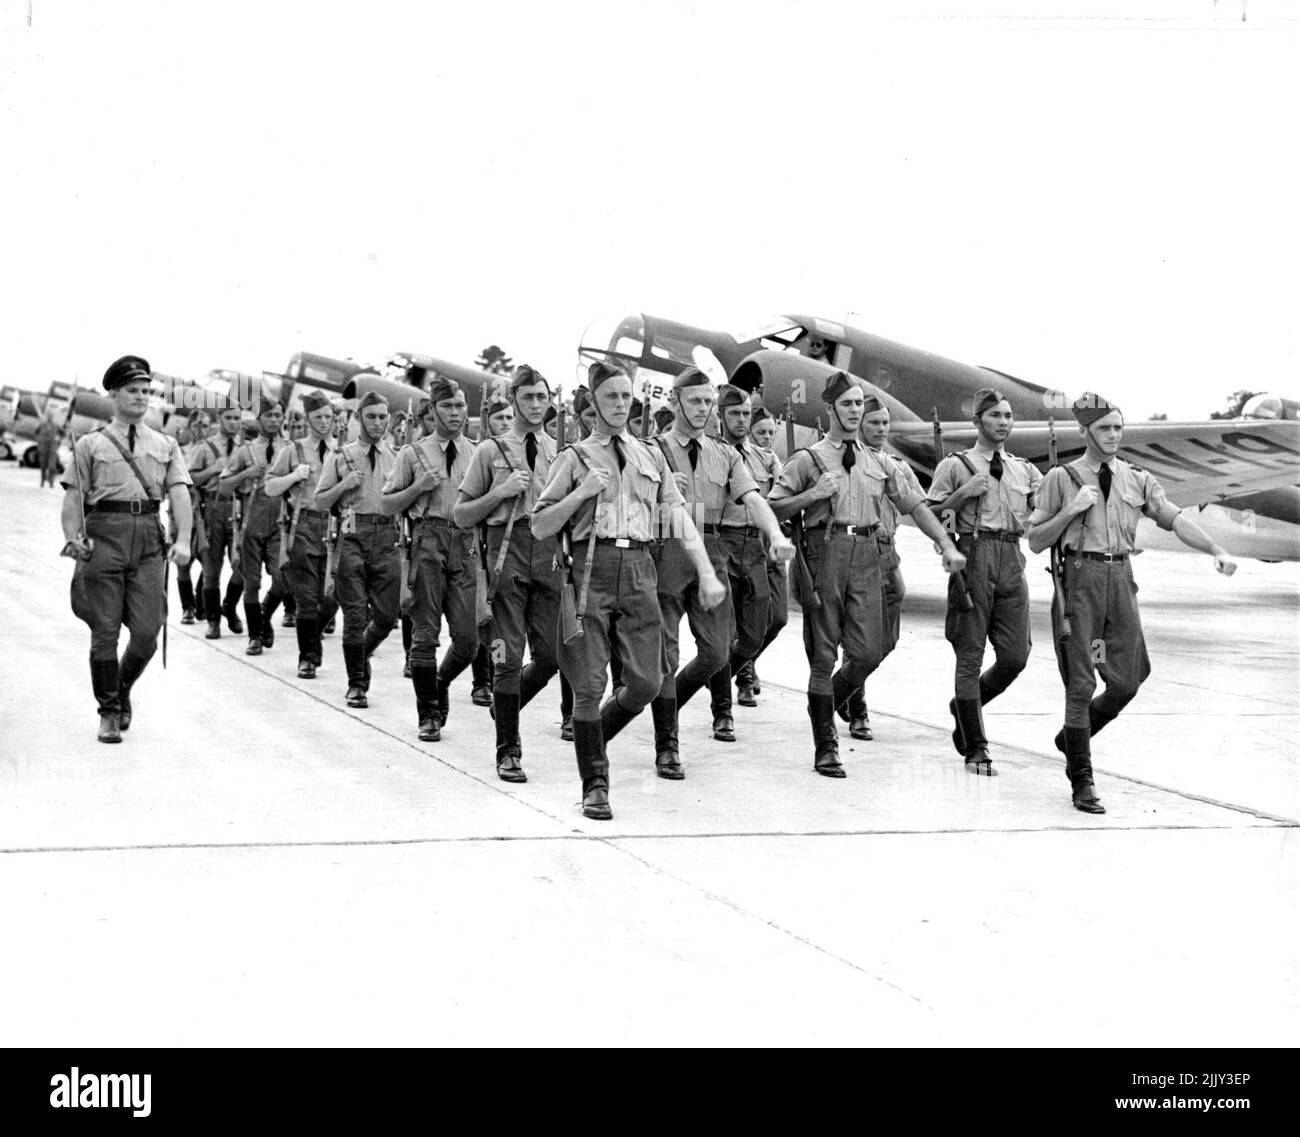 Holländische Studenten-Piloten marschieren -- Eine Gruppe holländischer Studenten-Piloten, die in Jackson, Missouri, eine Grund- und Weiterbildung erhalten, wird gezeigt, wie sie an einer Gruppe von Flugzeugen vorbeimarschieren, die in ihrem Unterricht verwendet wurden. Die jungen Piloten werden im Rahmen eines Programms ausgebildet, das von den Überresten der niederländisch-ostindischen Luftwaffe in Abstimmung mit der US-Armee-Luftwaffe ausgearbeitet wurde. 16. Juni 1942. (Foto von Associated Press Photo). Stockfoto